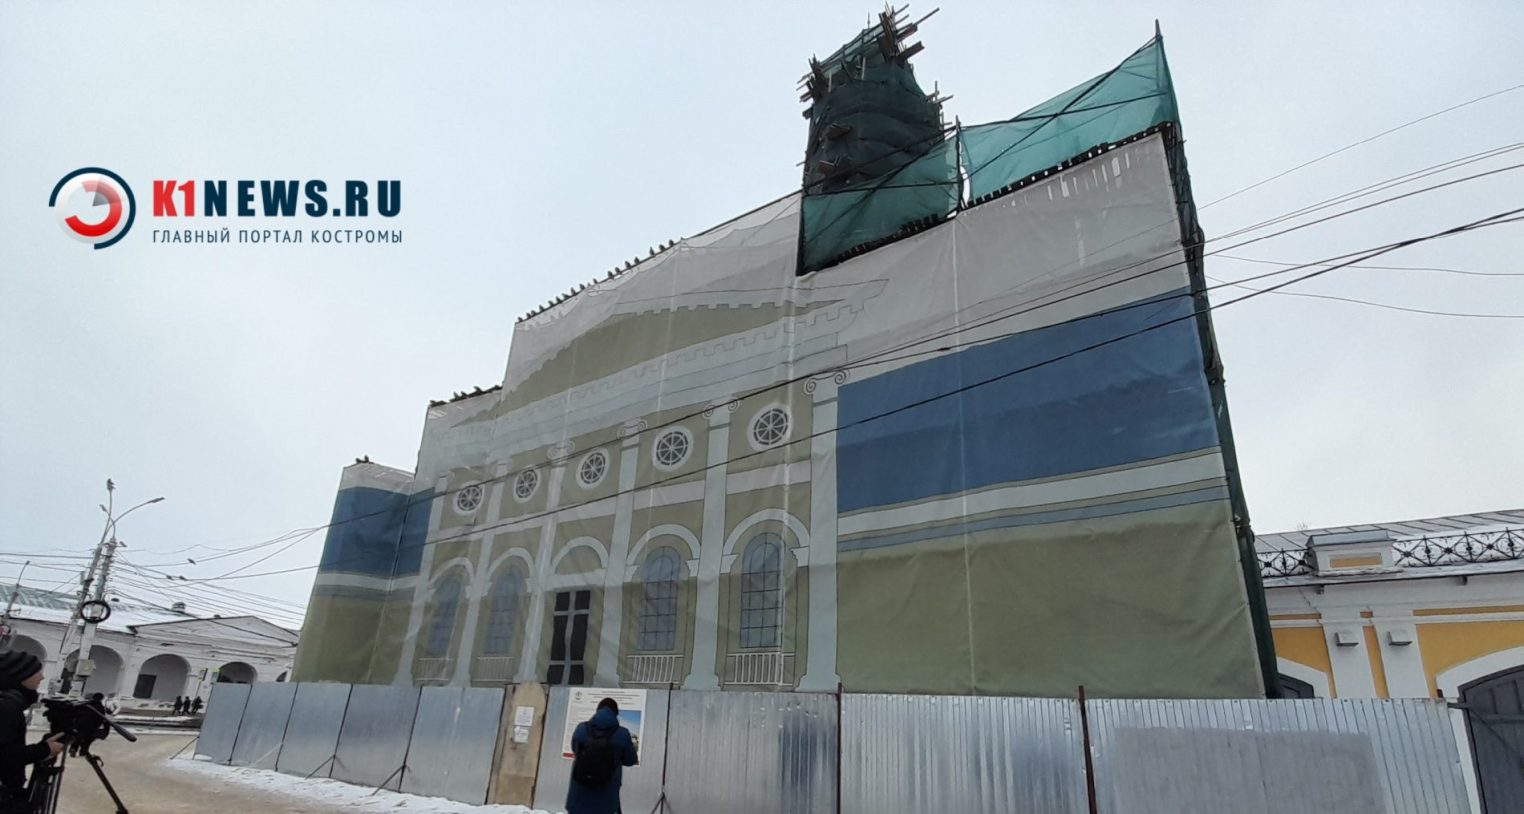 Новый купол весом в тонну водрузили в Костроме на Пожарную каланчу